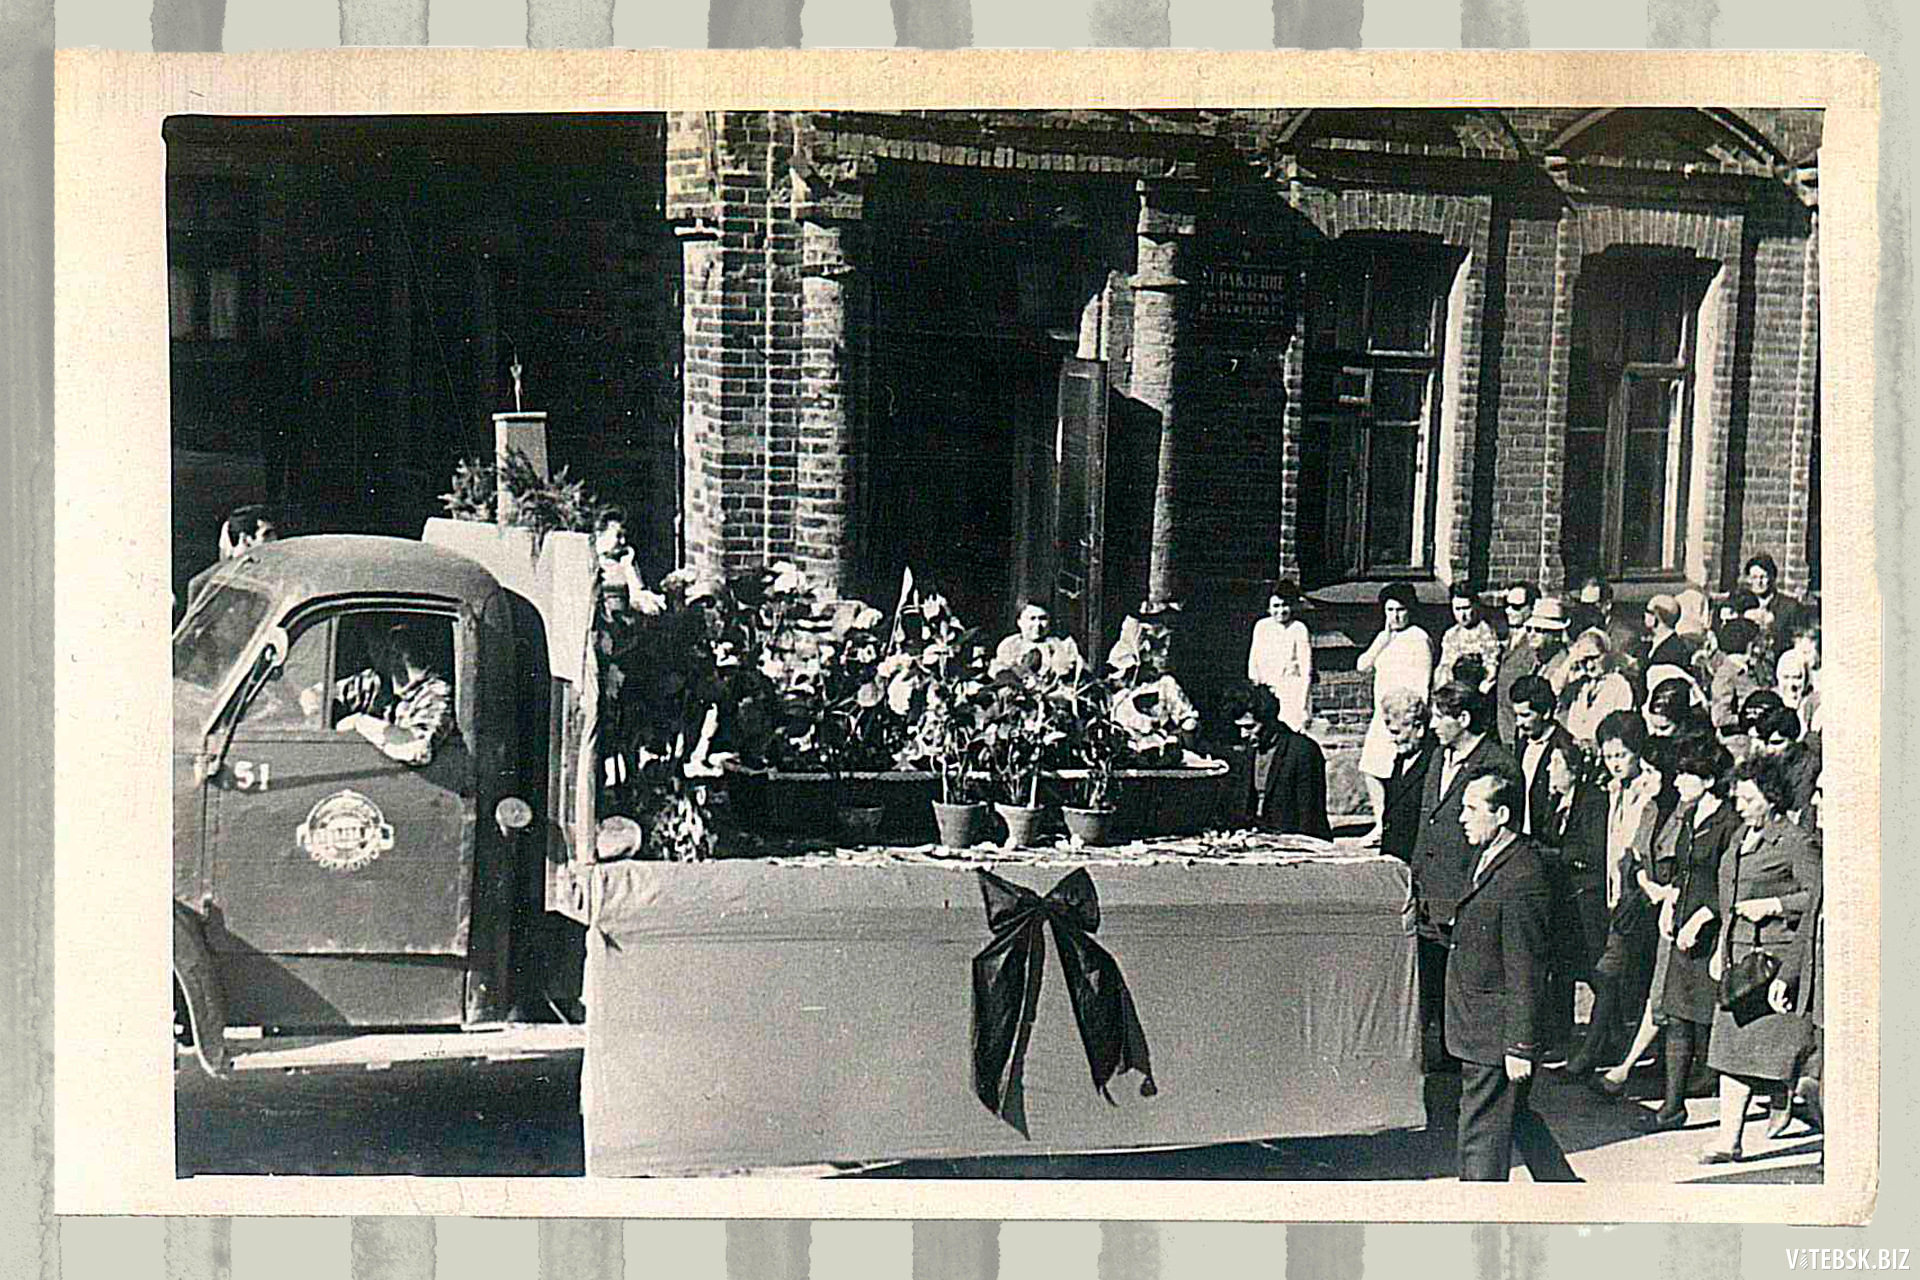 Похороны Артавазда Арумяна, 1968 год. Родные и коллеги прощаются с ним возле дома №7 на улице Чехова, хотя за год до смерти он переехал с дочерью в другой район Витебска. Фото: семейный архив